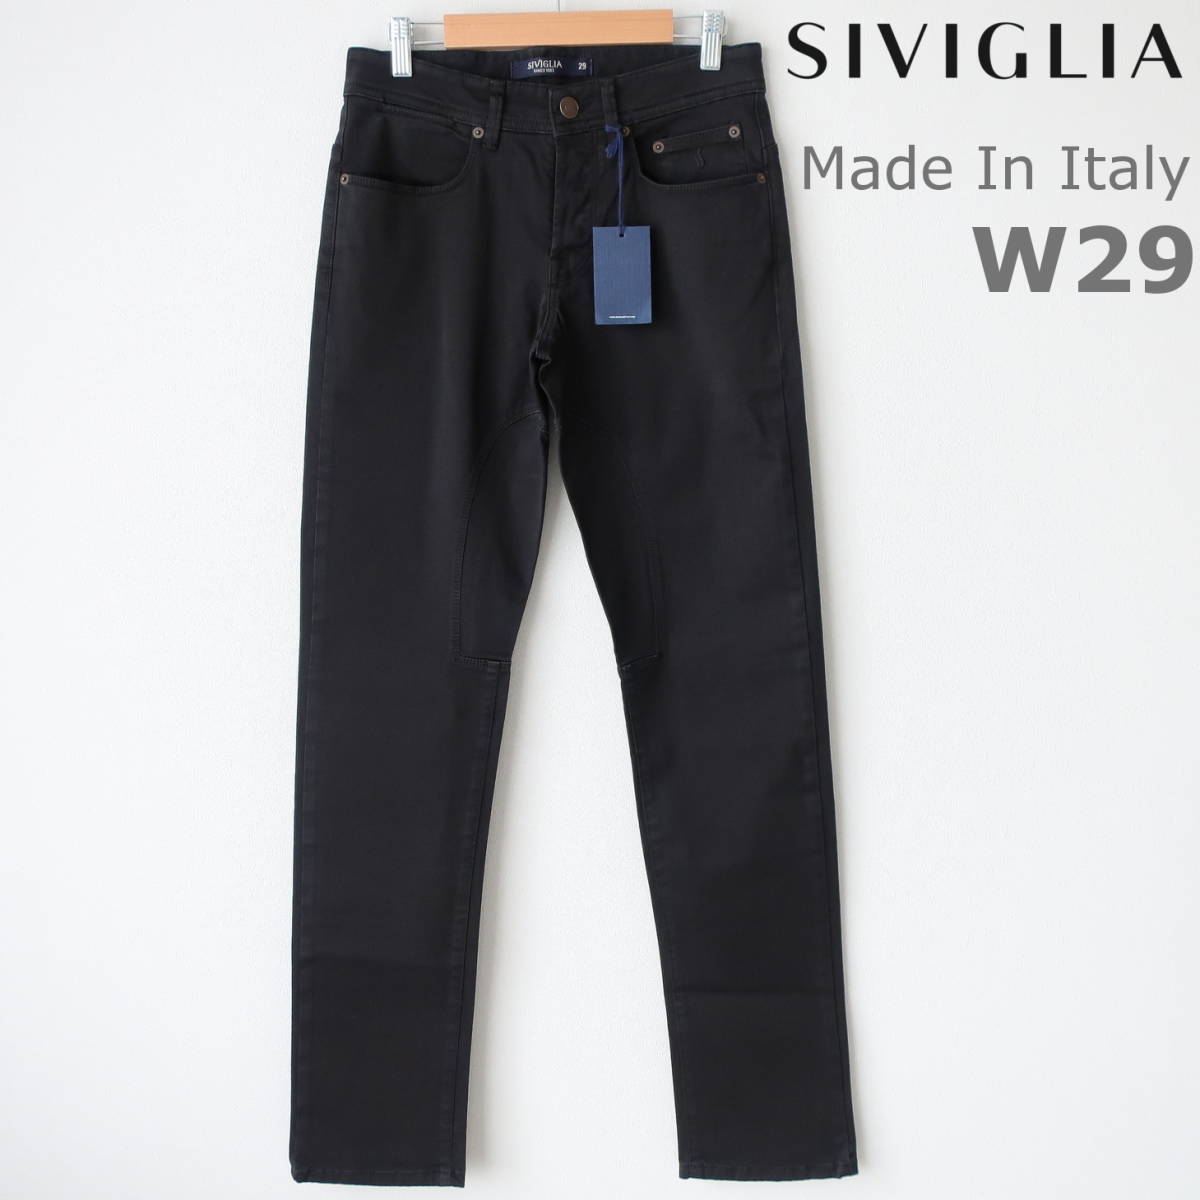 新品タグ付き SIVIGLIA シビリア Made In Italy メンズ ブラック デニム 美シルエット ジーンズ BASIC ストレッチ 黒  W29 Sサイズ相当